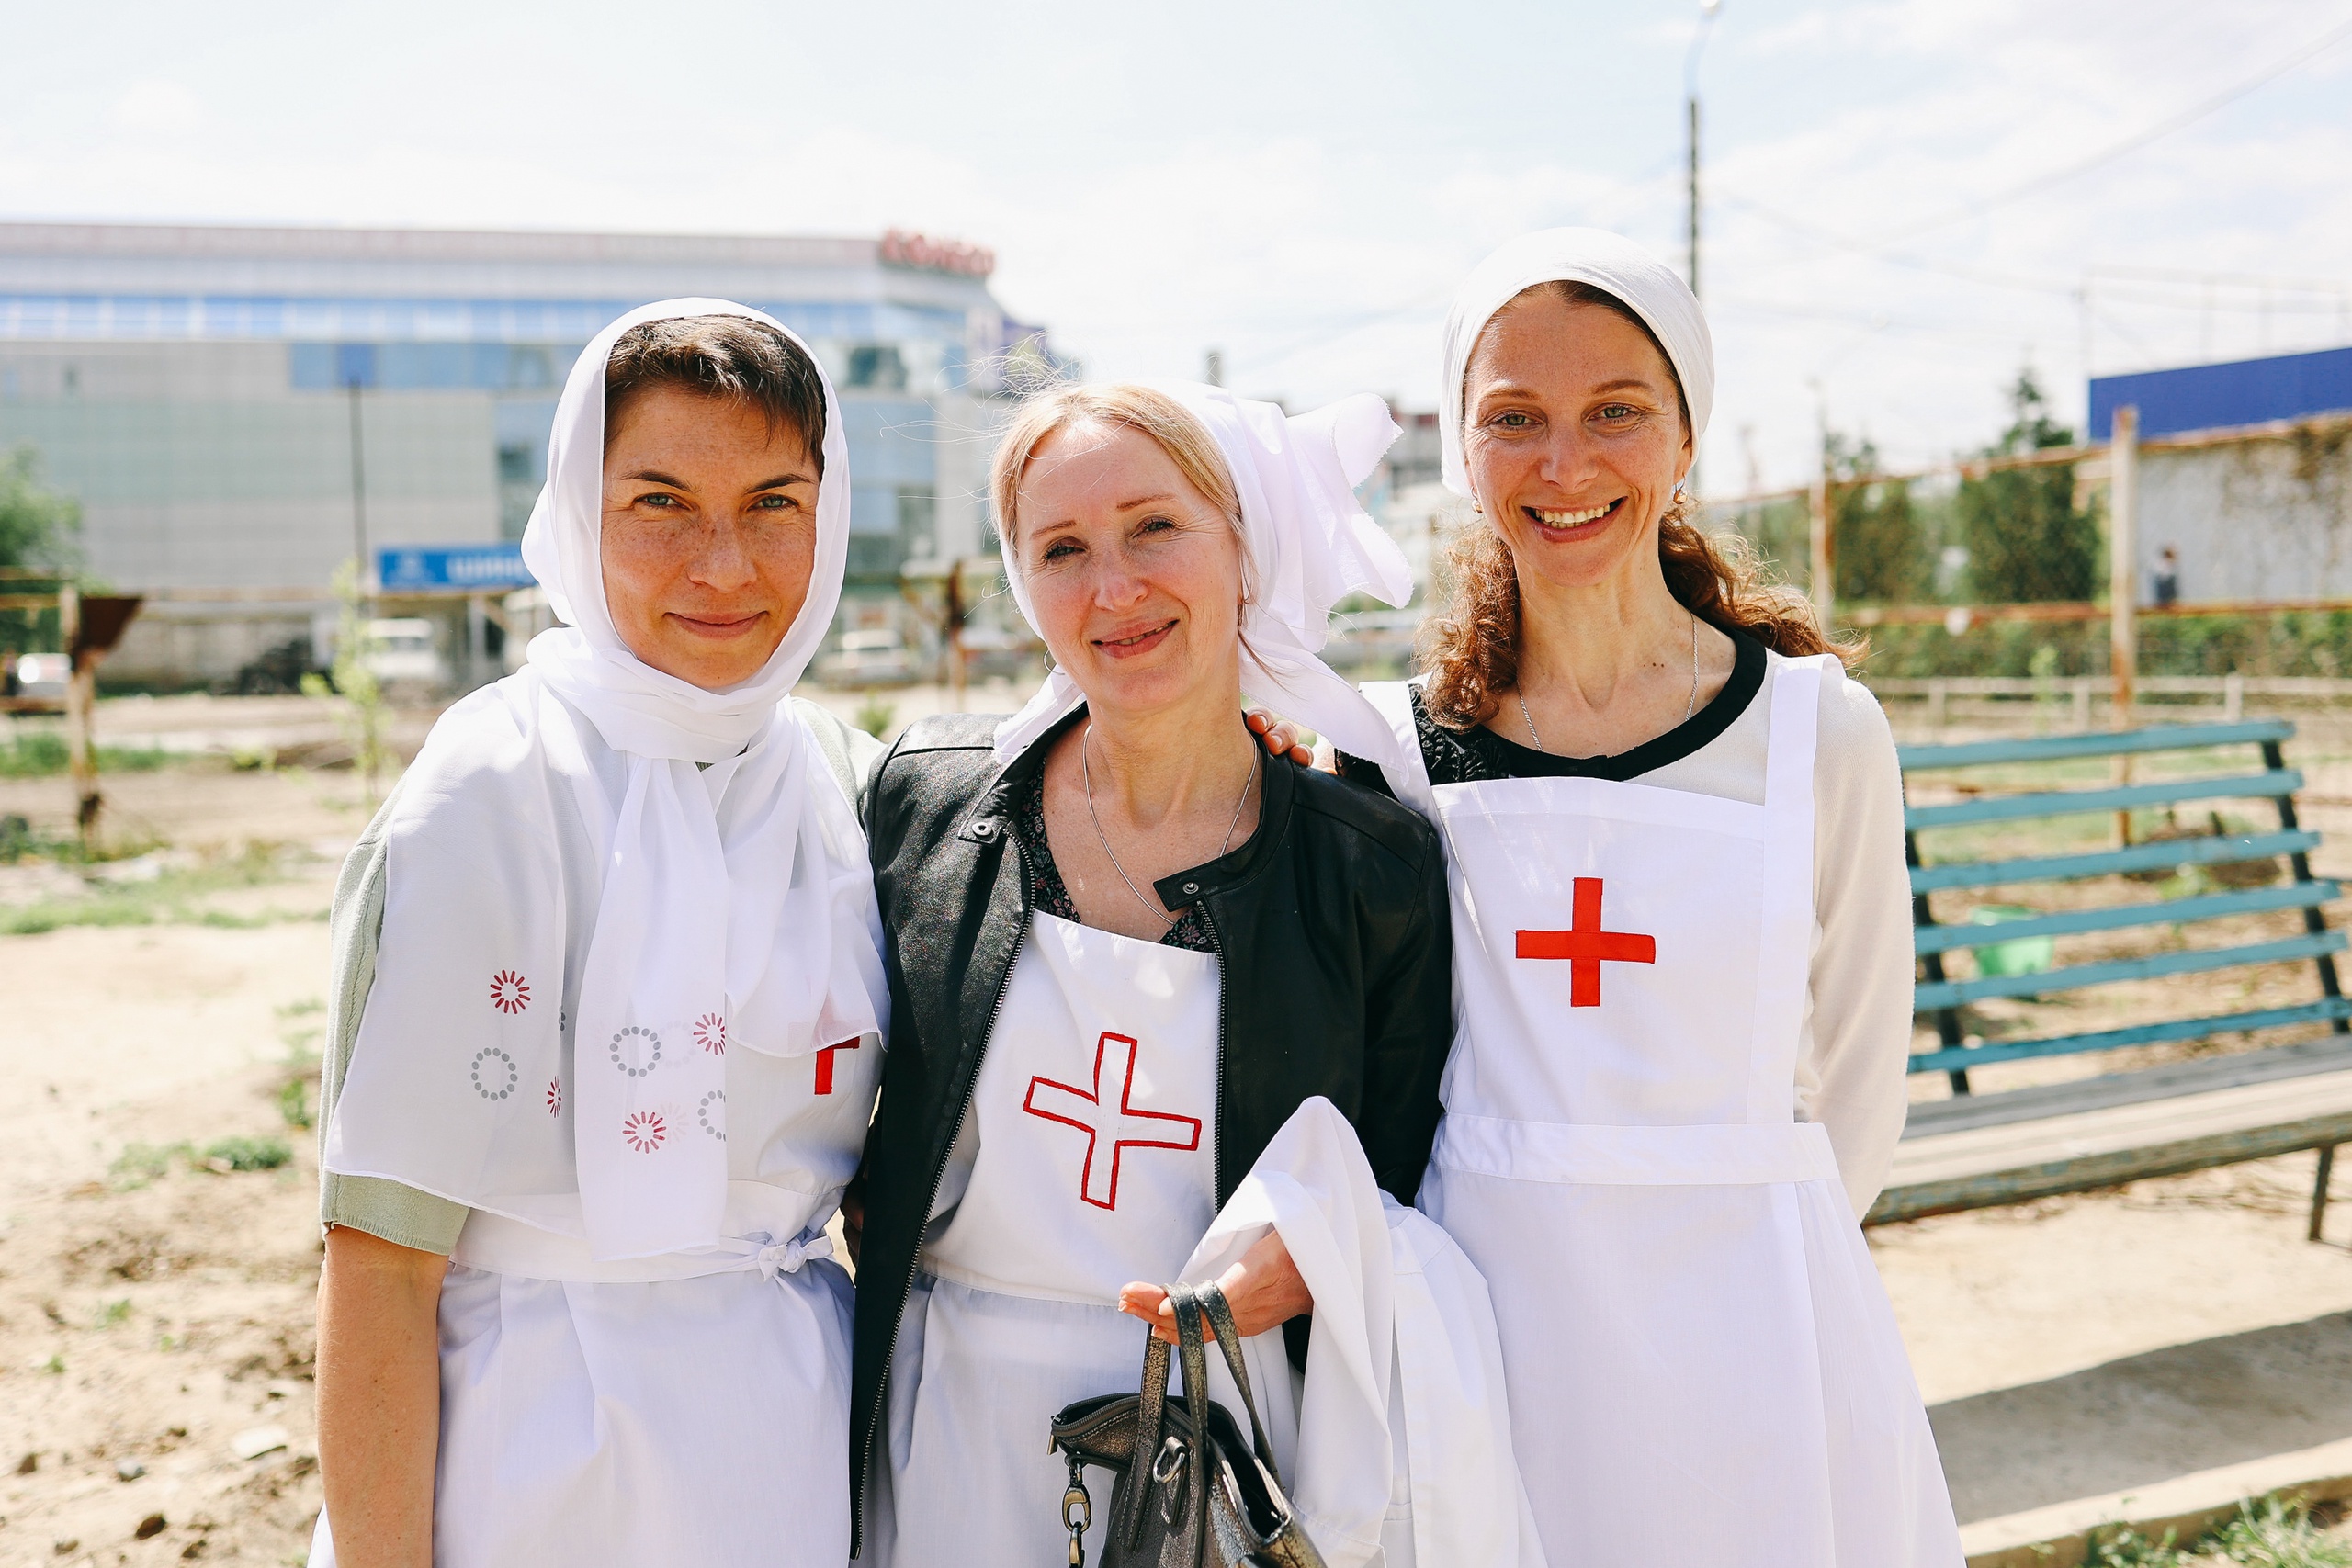 12 мая — Международный день медицинской сестры